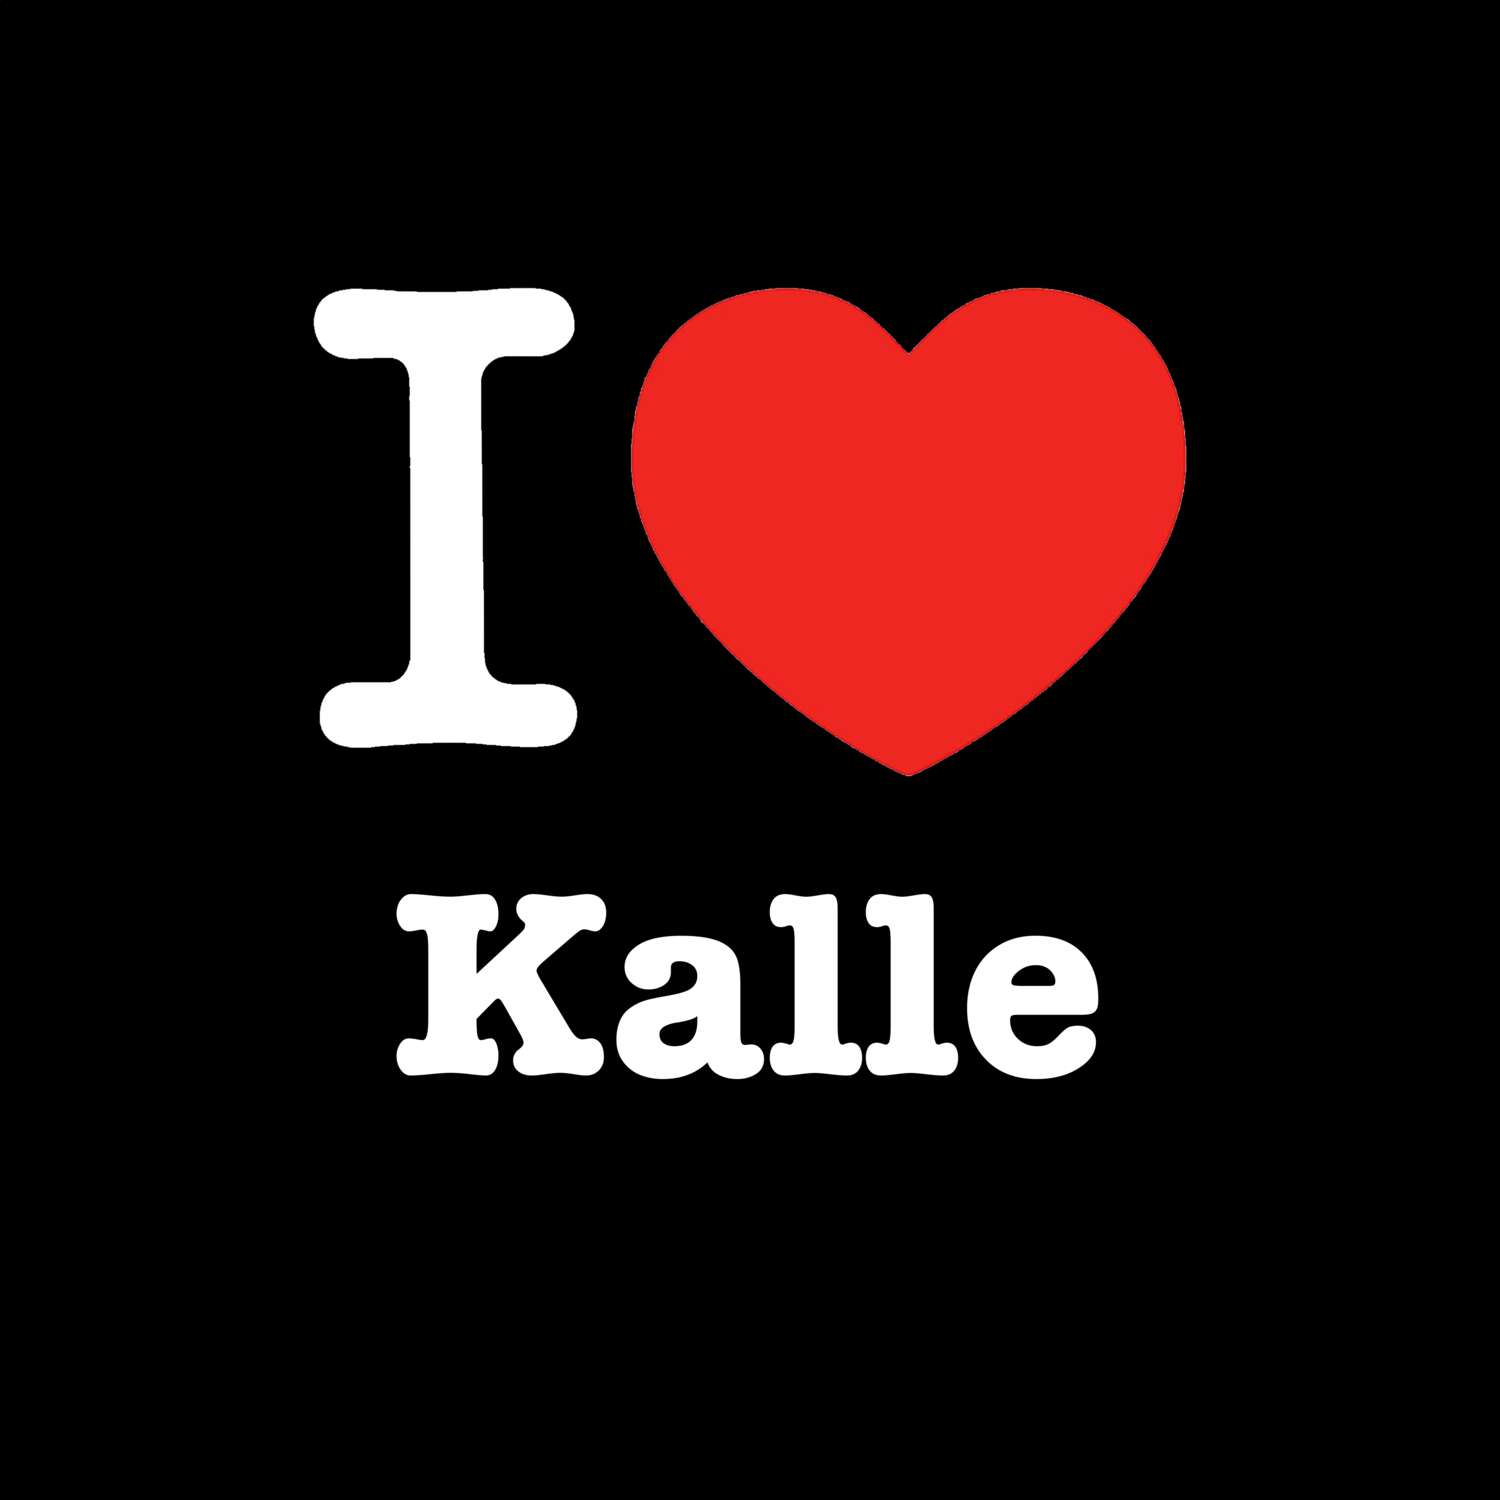 Kalle T-Shirt »I love«